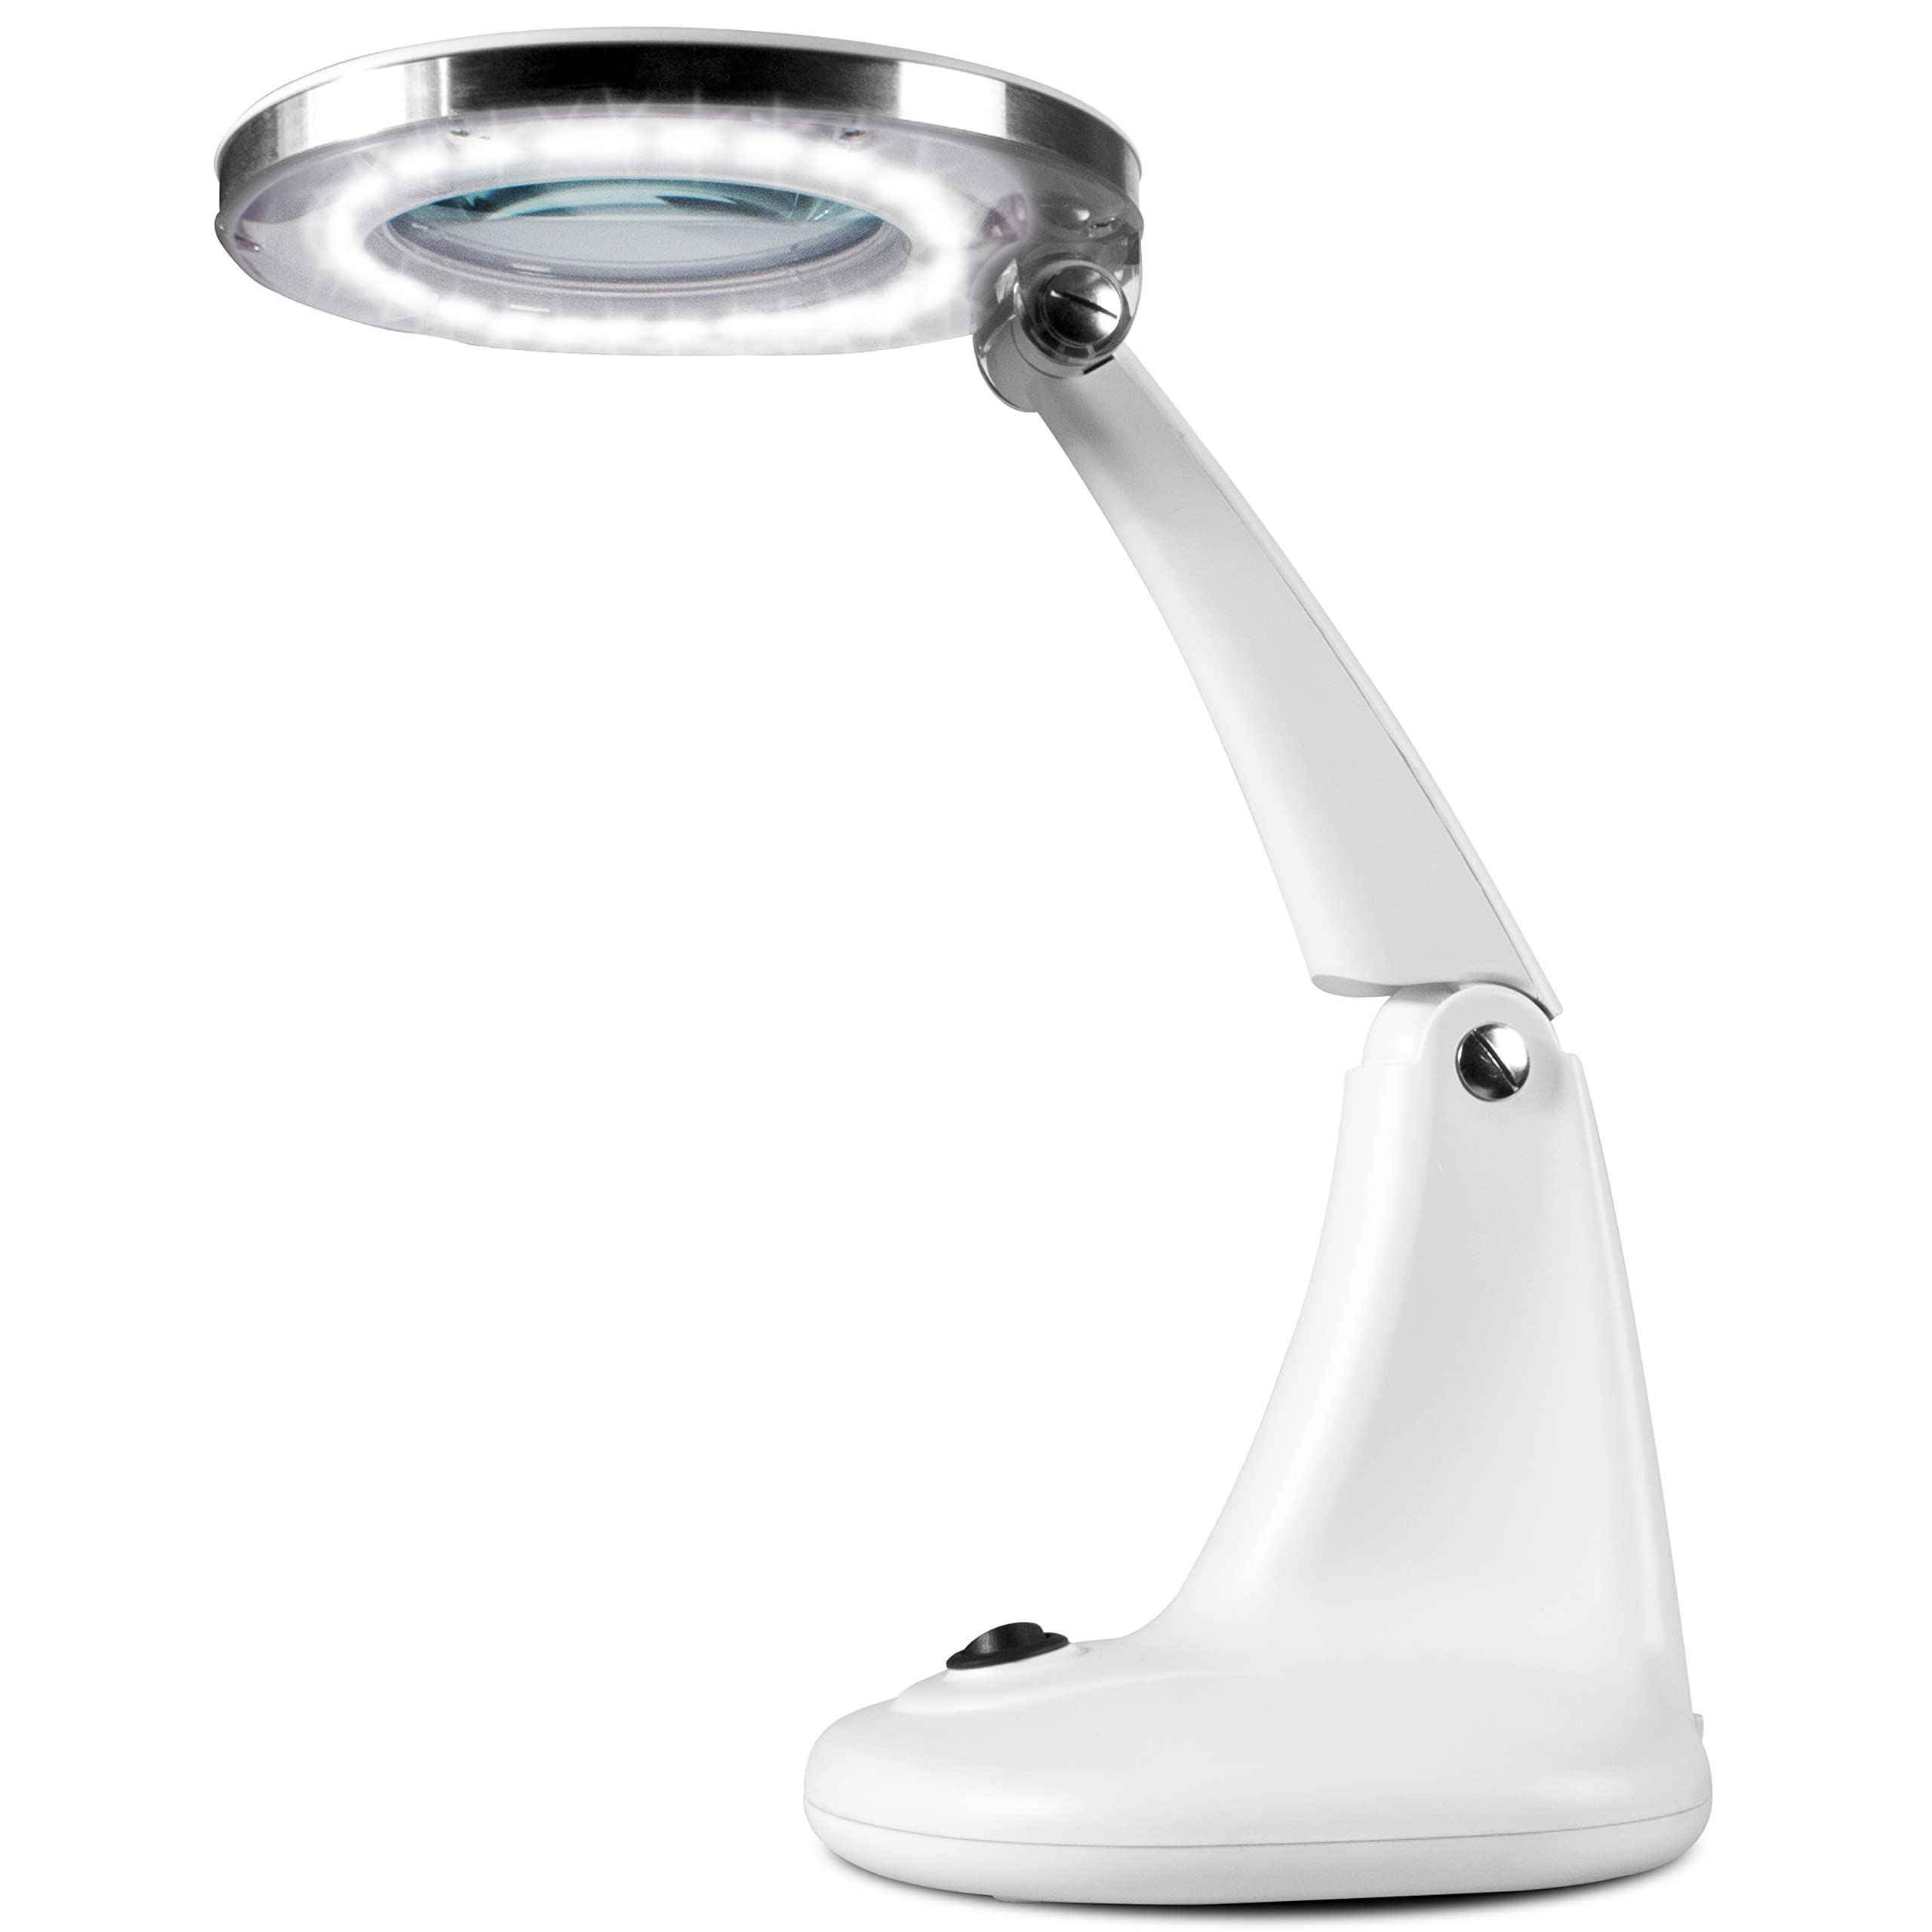 Fysic FL-30LED - Lupenlampe - Tischlupe mit Licht LED - Tischlampe mit Lupe - für Handwerkliche Arbeiten Lesen,Nähen,Hobbys,Arbeit,Sehschwäche - Weiß